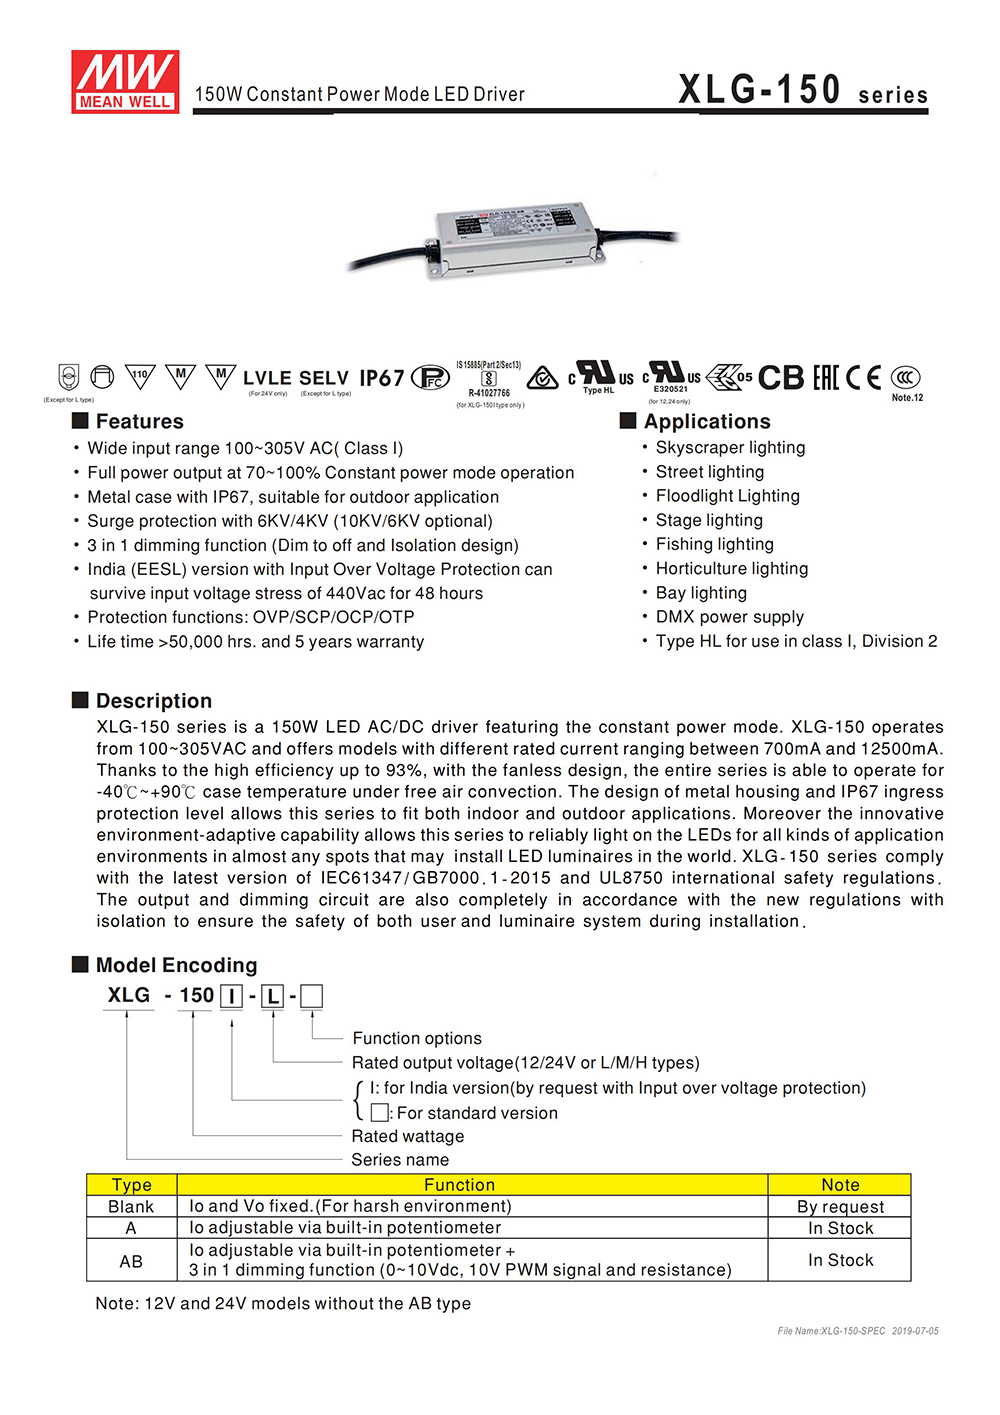 12 Volt LED Netzteil Mean Well XLG-150-12-A 150 Watt 12.5A IP67